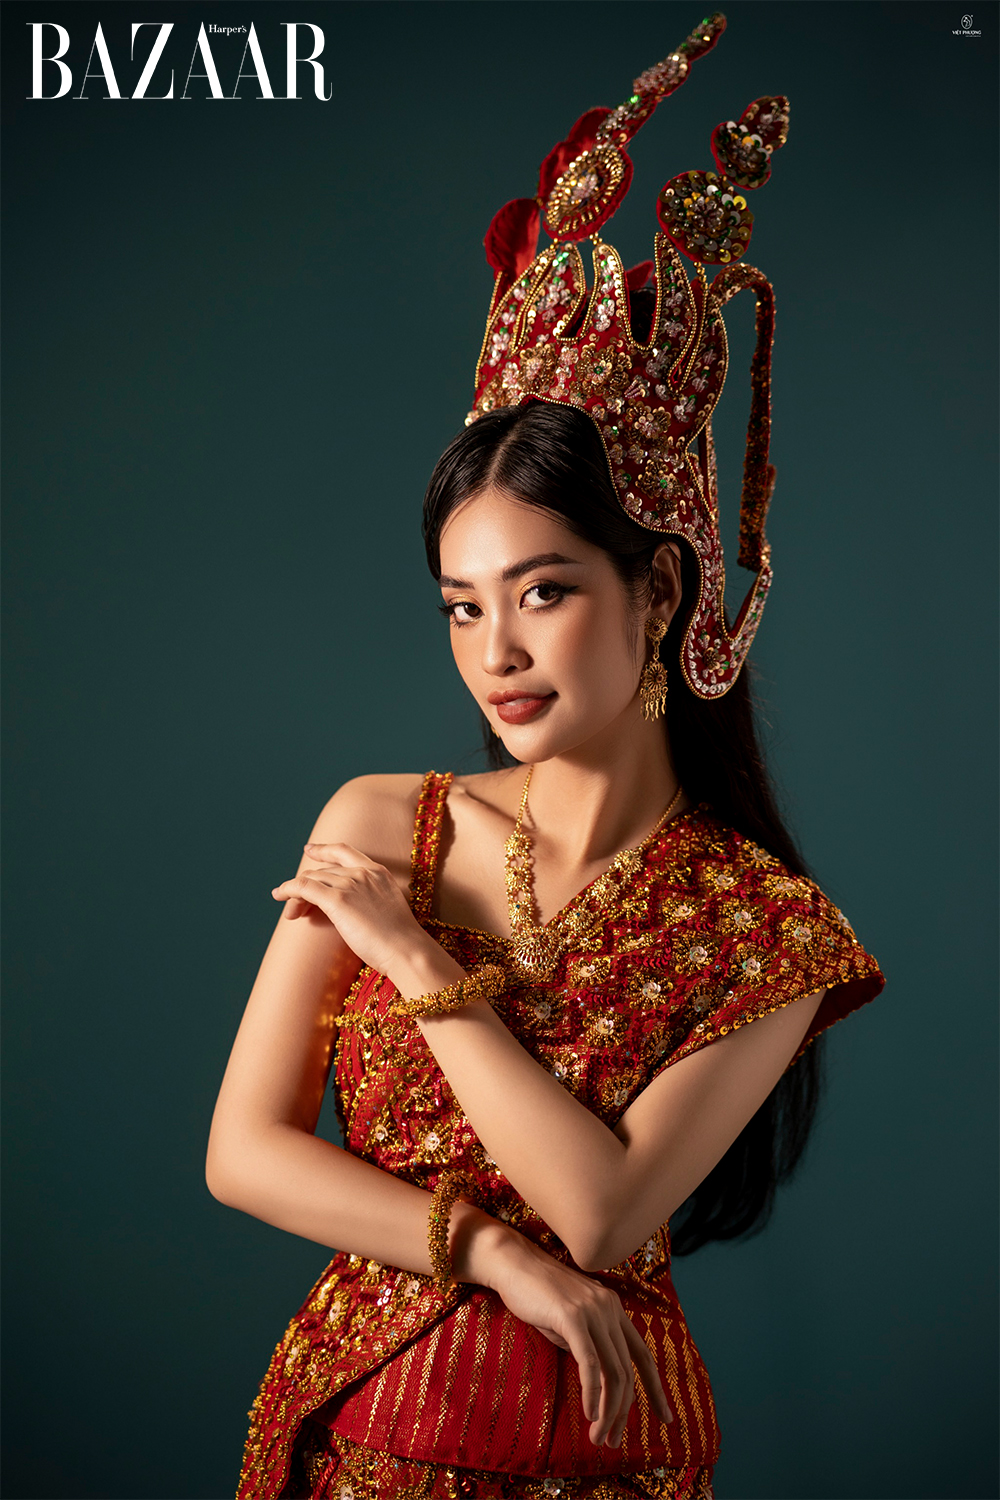 Harper's Bazaar_Dự án trang phục cưới dân tộc Việt Nam của Nông Thúy Hằng_02